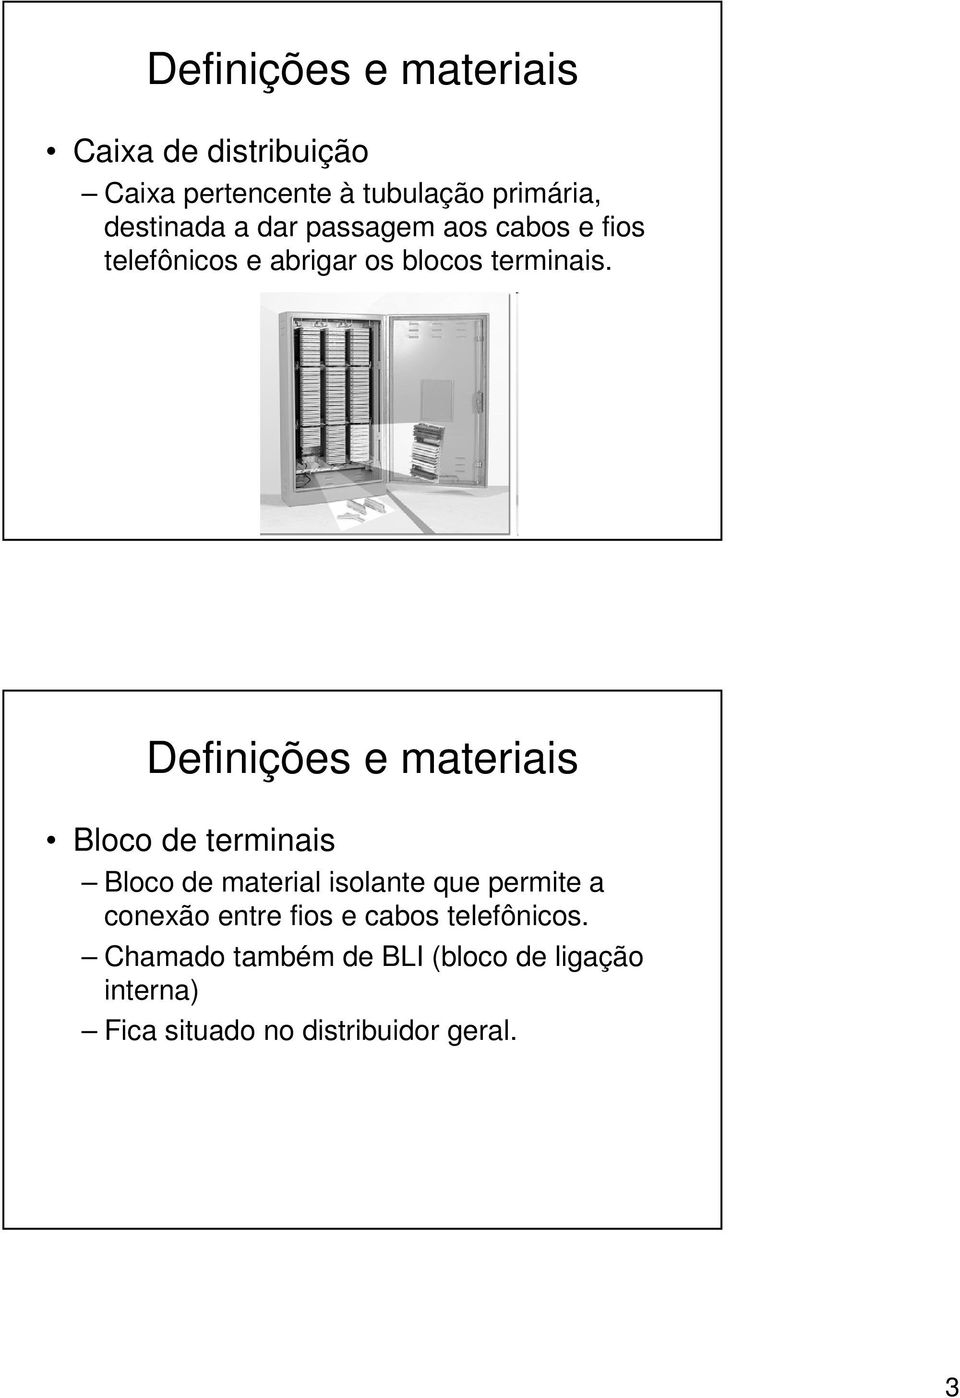 Definições e materiais Bloco de terminais Bloco de material isolante que permite a conexão